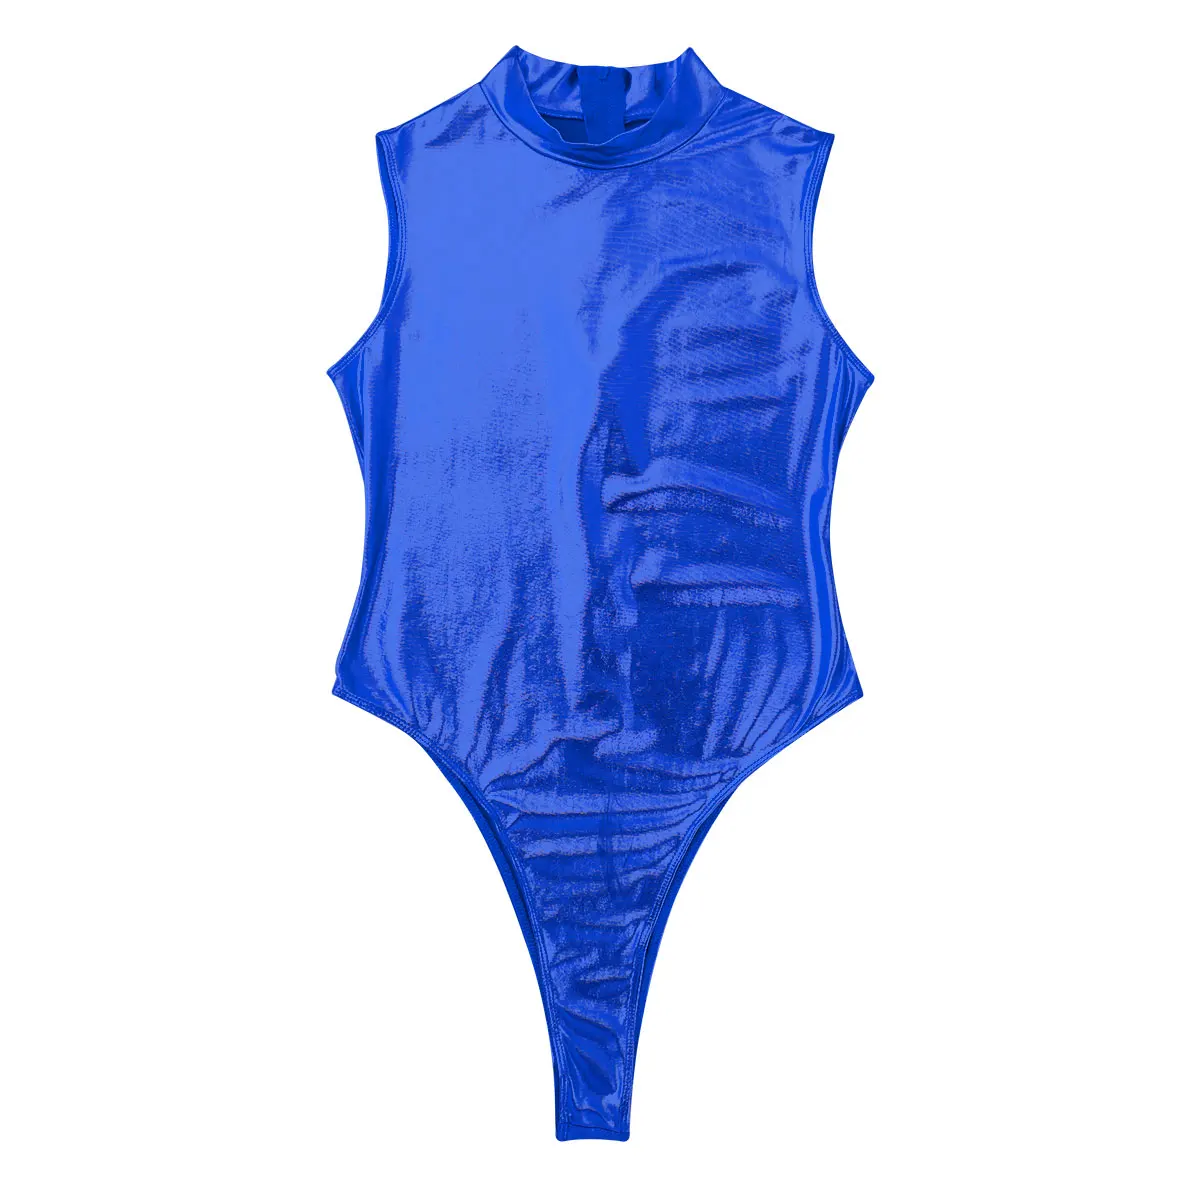 Балетное трико, женское трико, боди, купальник, цельное блестящее металлическое нижнее белье, макет шеи, высокий вырез, стринги, купальник, комбинезон - Color: Royal Blue